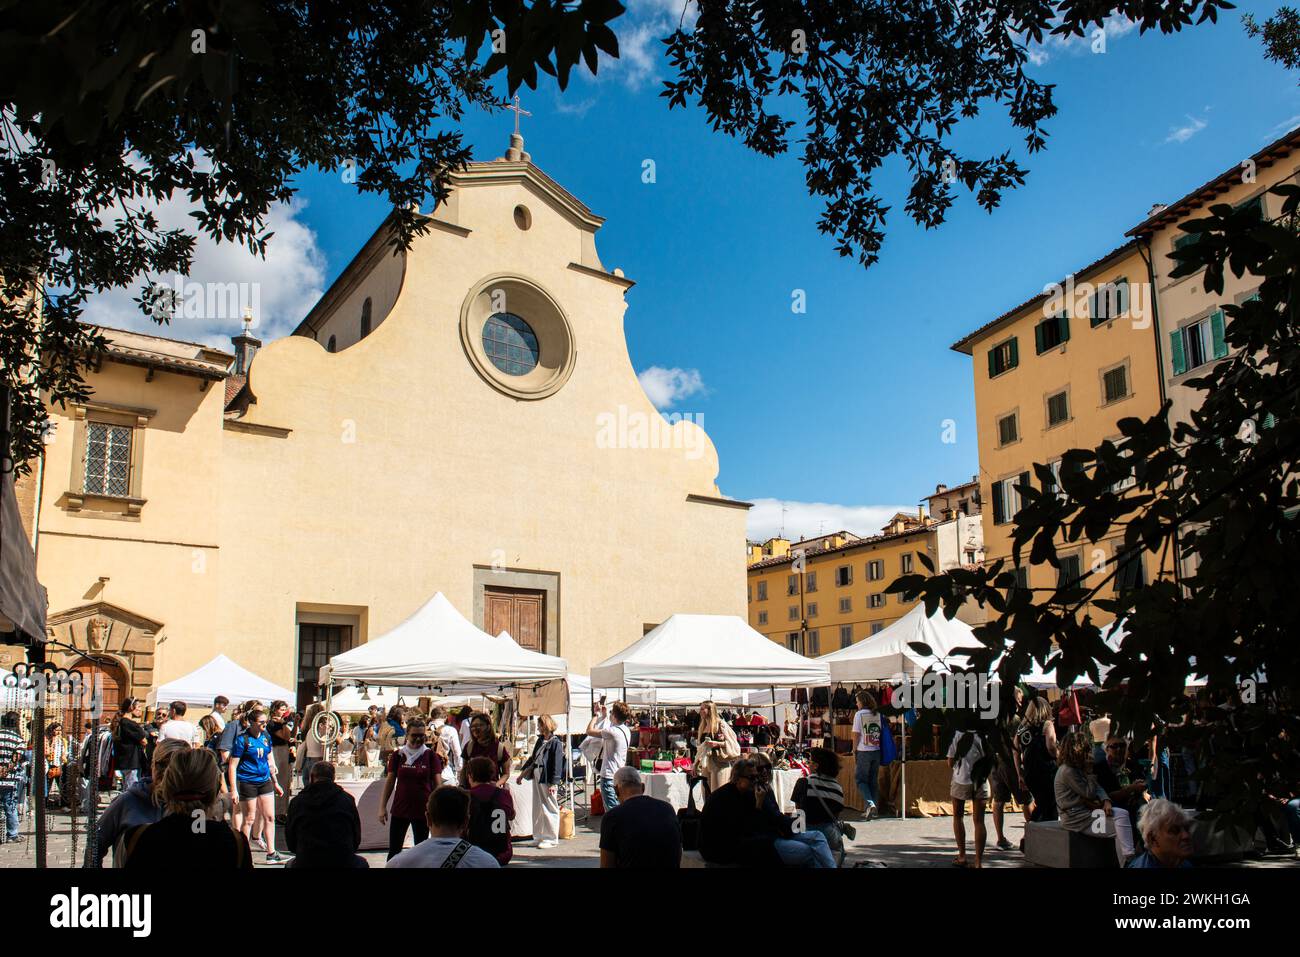 Sunday markets at Piazza Santo Spirito, in front of the Basilica di Santo Spirito, in the Oltrarno district of Florence, Italy Stock Photo